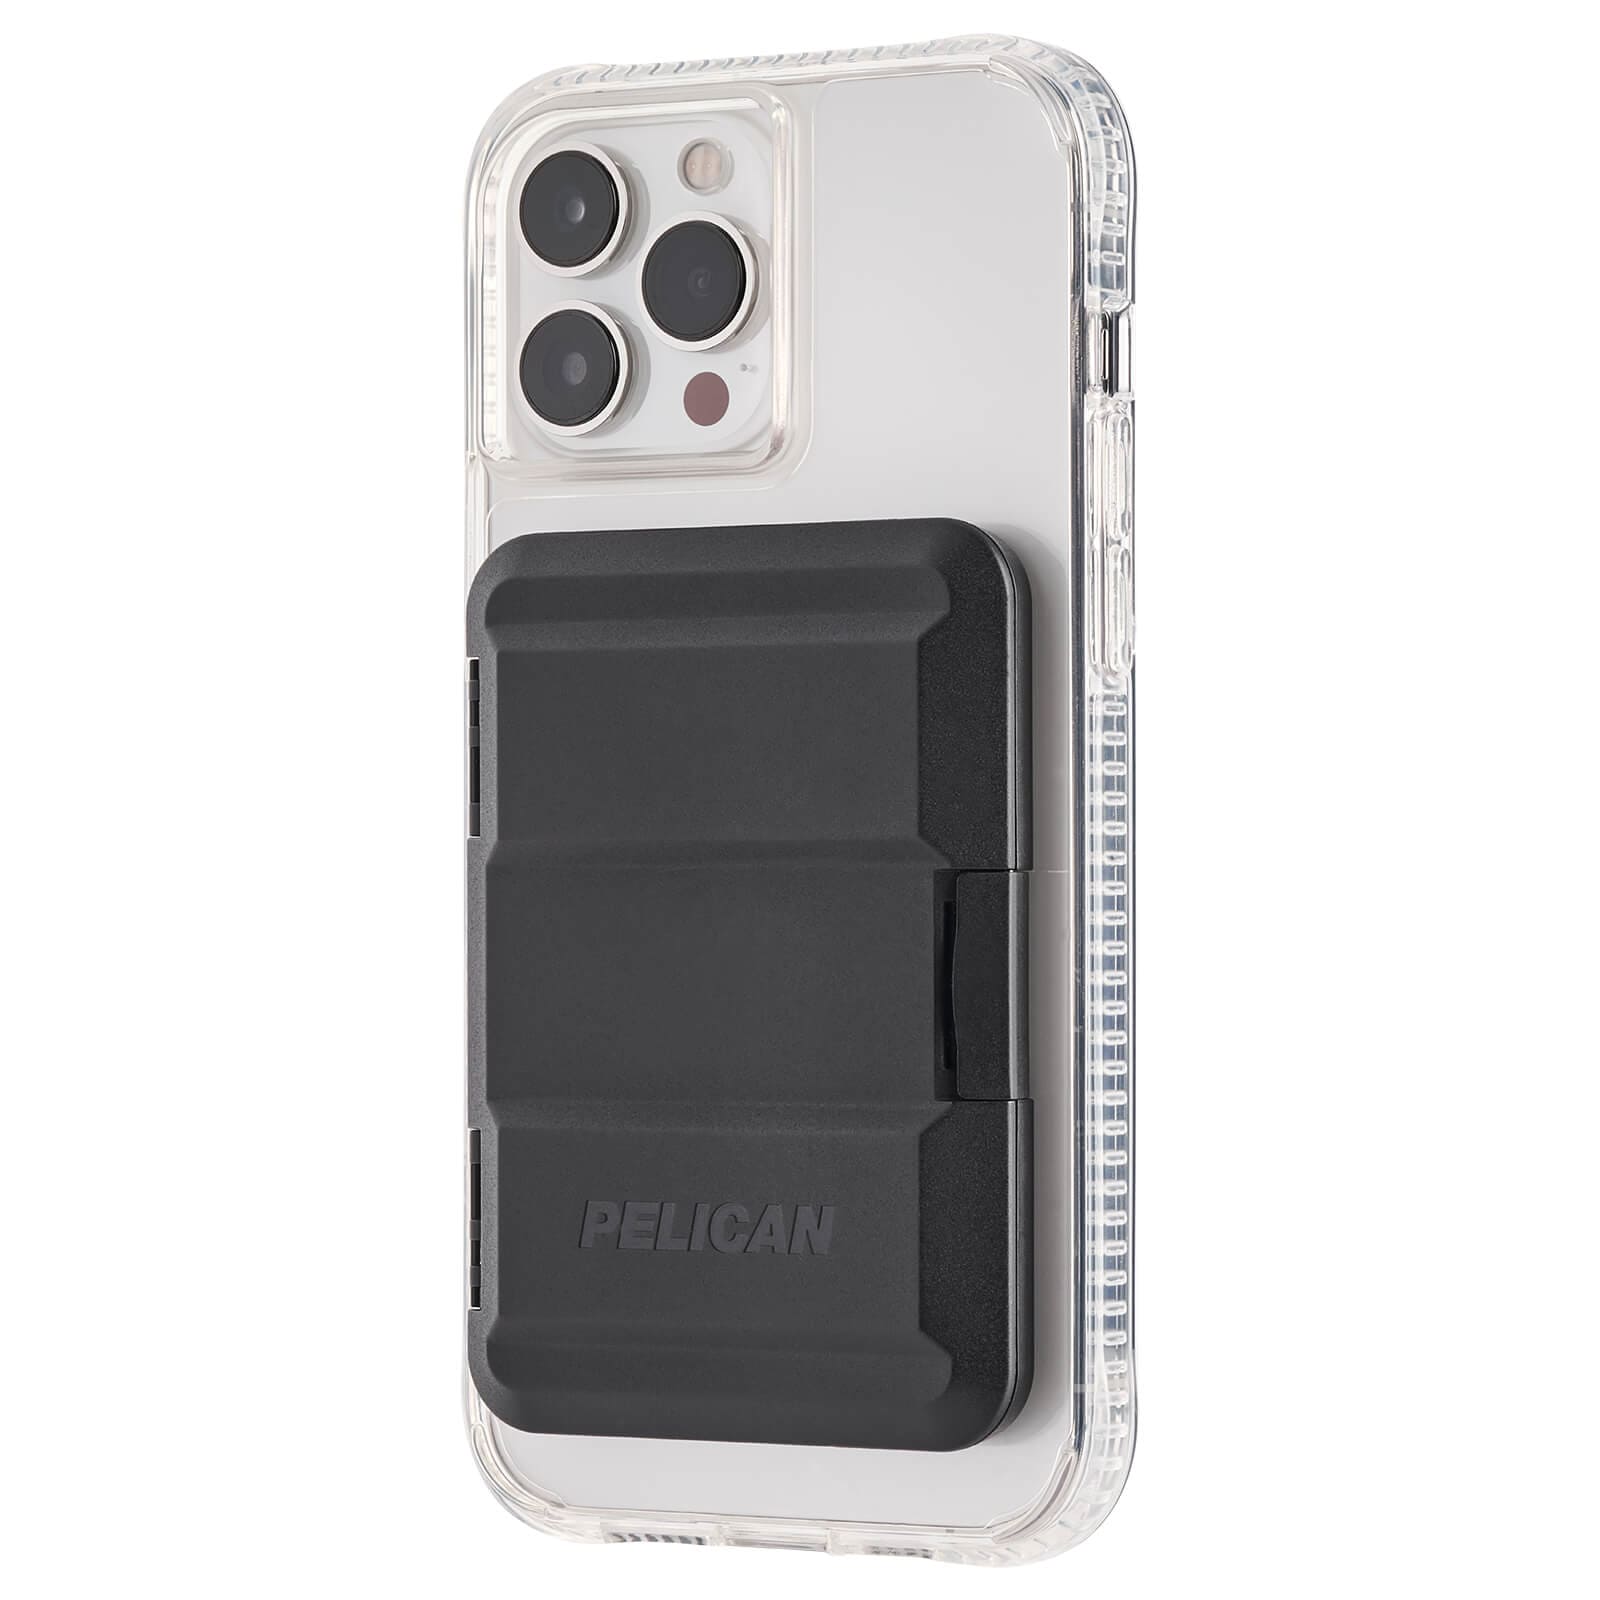 Protector MagSafe Wallet (Black) – Pelican Outdoor